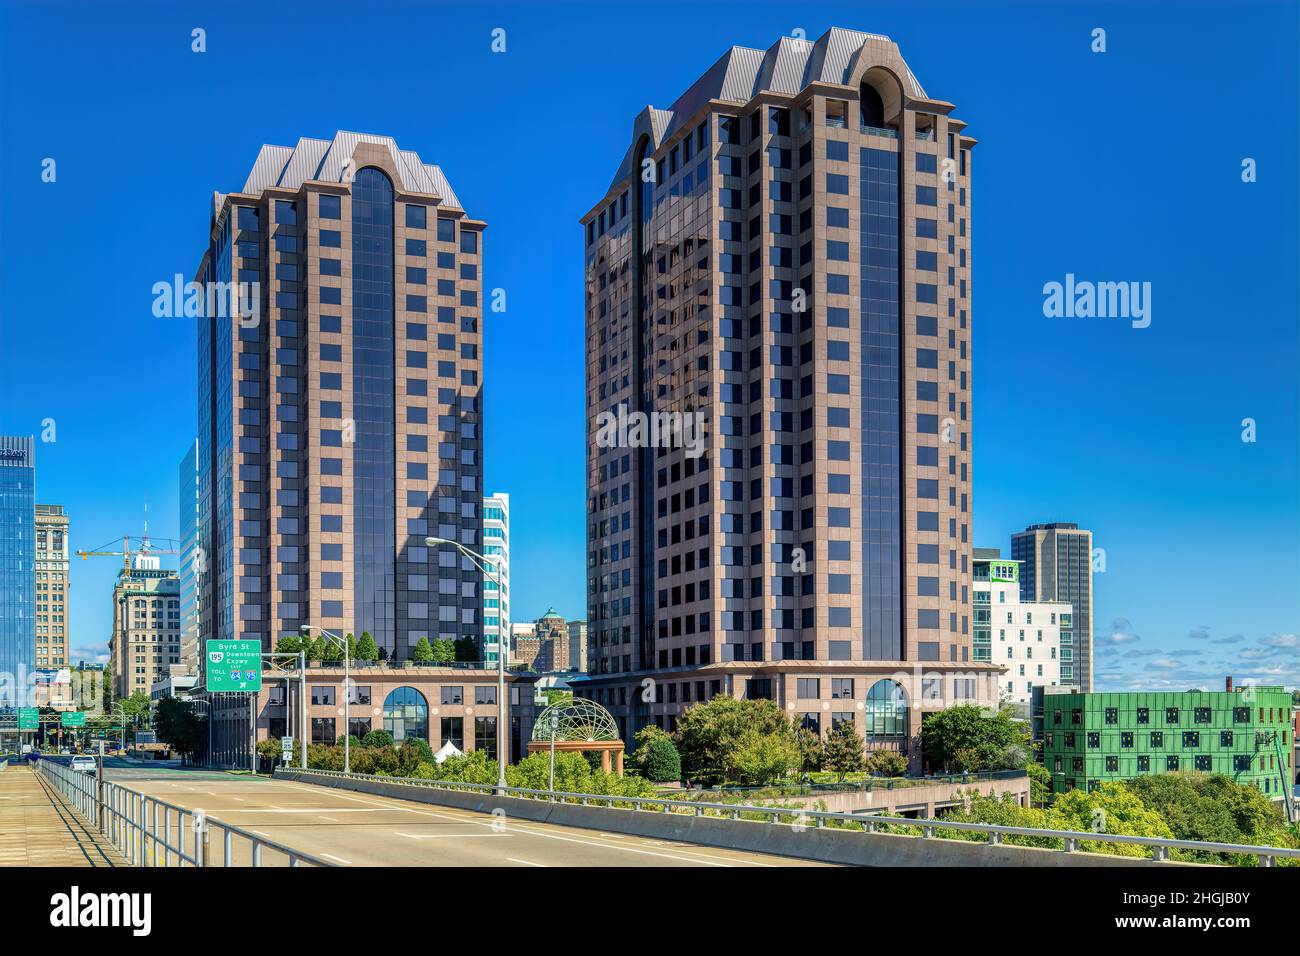 Riverfront Plaza est une paire de tours de bureaux à façade de granit rouge surplombant le canal de Kanawha et la rivière James, juste à l'est de la Federal Reserve Bank of Rich Banque D'Images